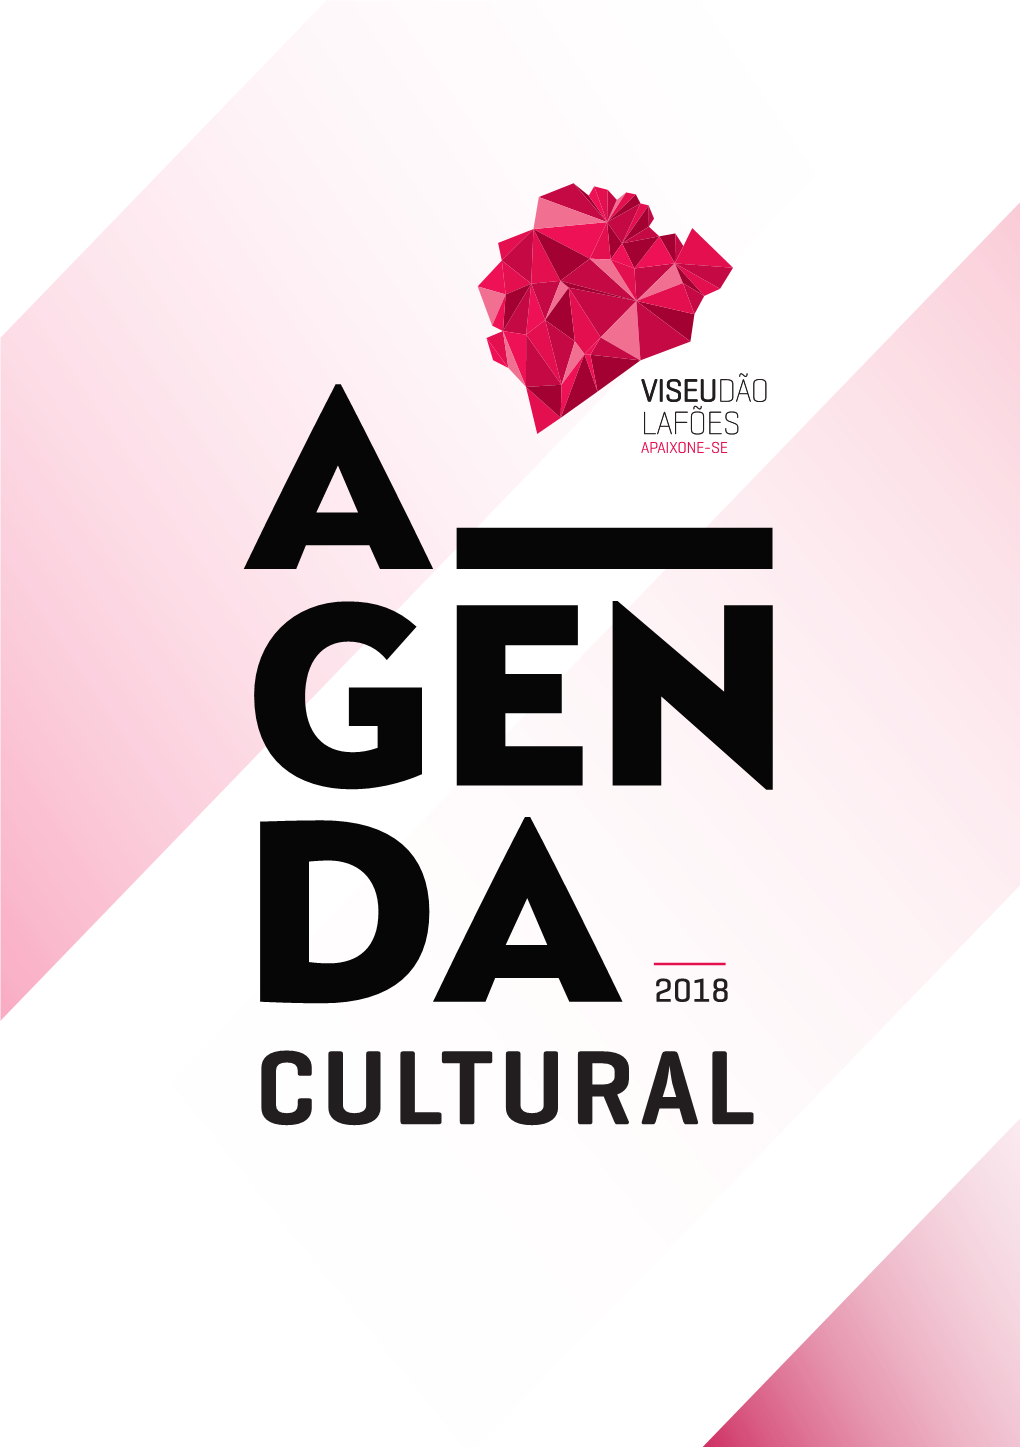 Cultural Agenda Cultural Cim Viseu Dão Lafões